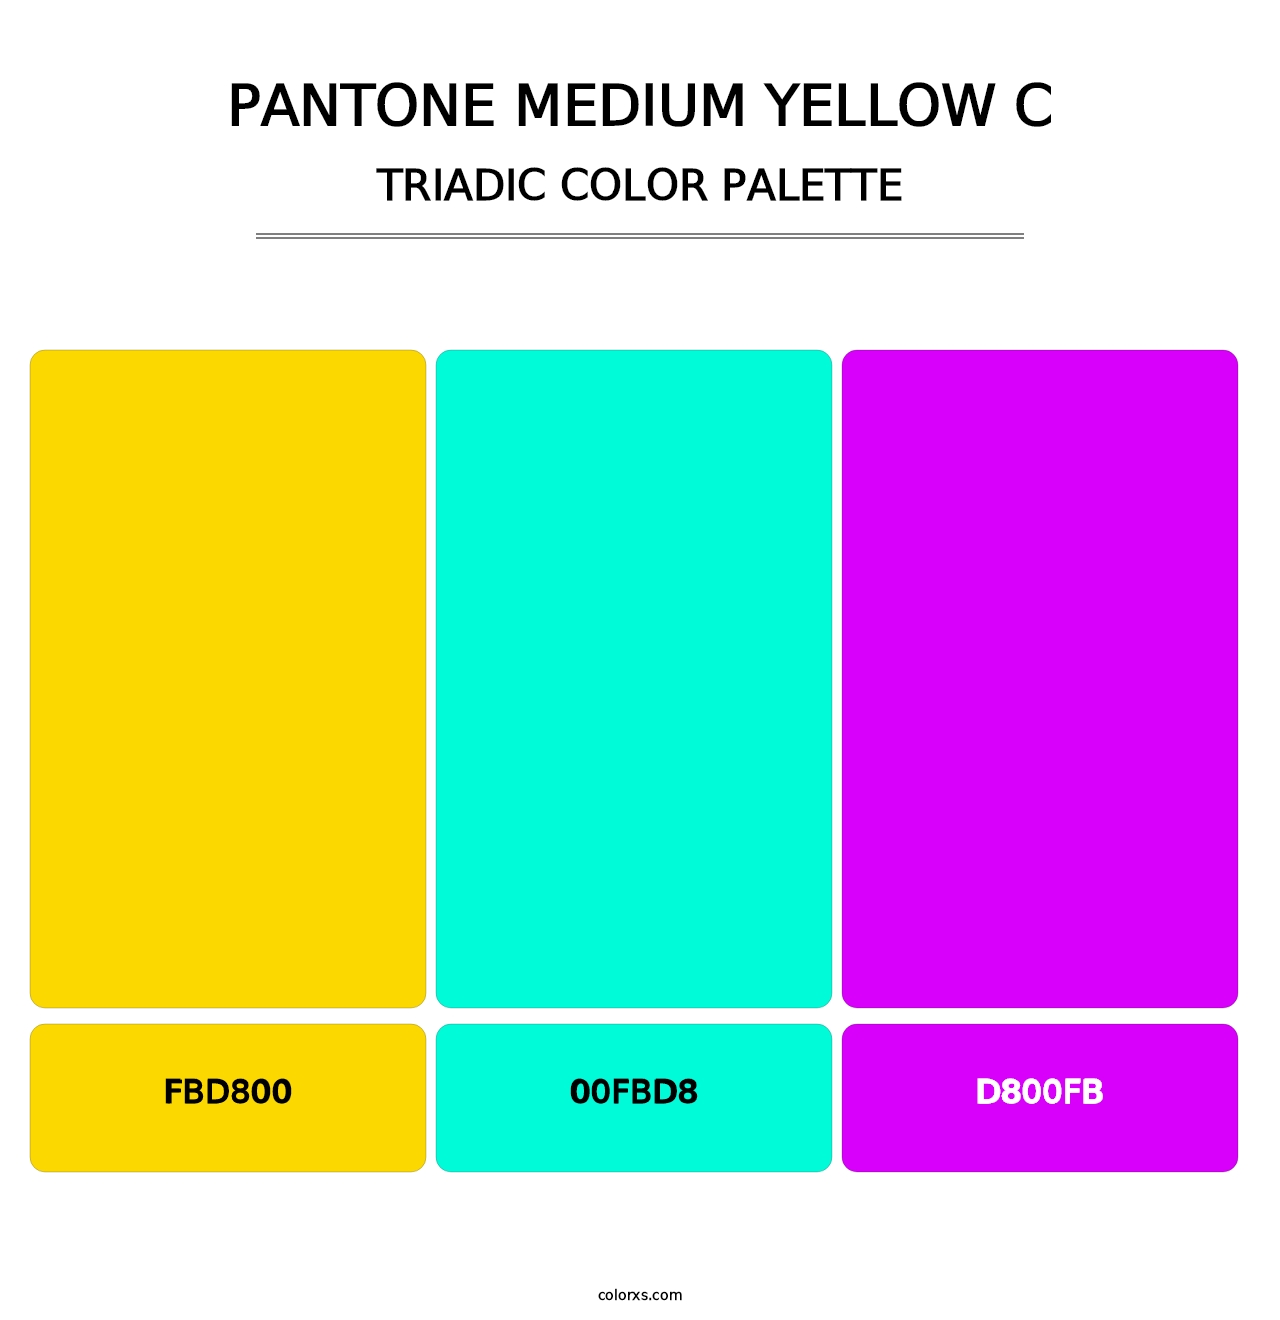 PANTONE Medium Yellow C - Triadic Color Palette